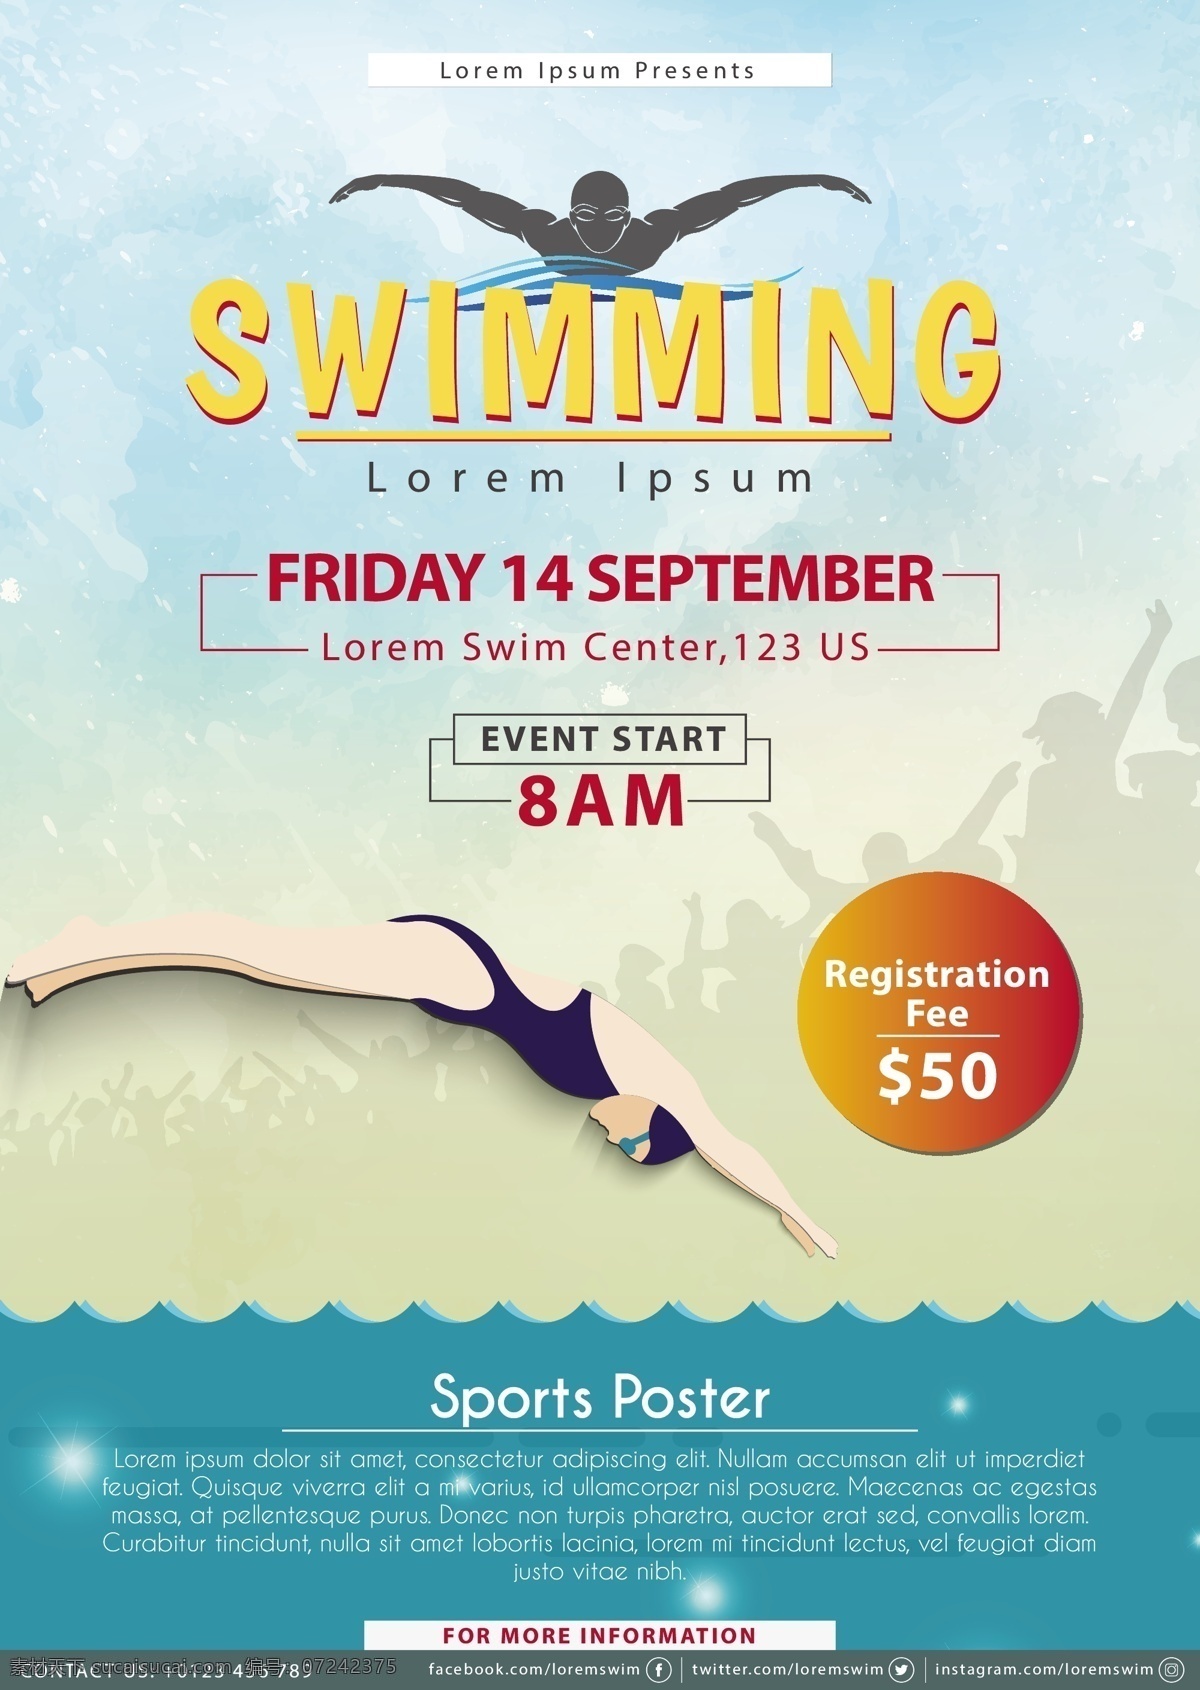 游泳 比赛 艺术品 向量 图像 插画 模板 传单 海报 a4 清洁 纸 池 水 训练 健康 游泳的 学习 竞争 户外 俱乐部